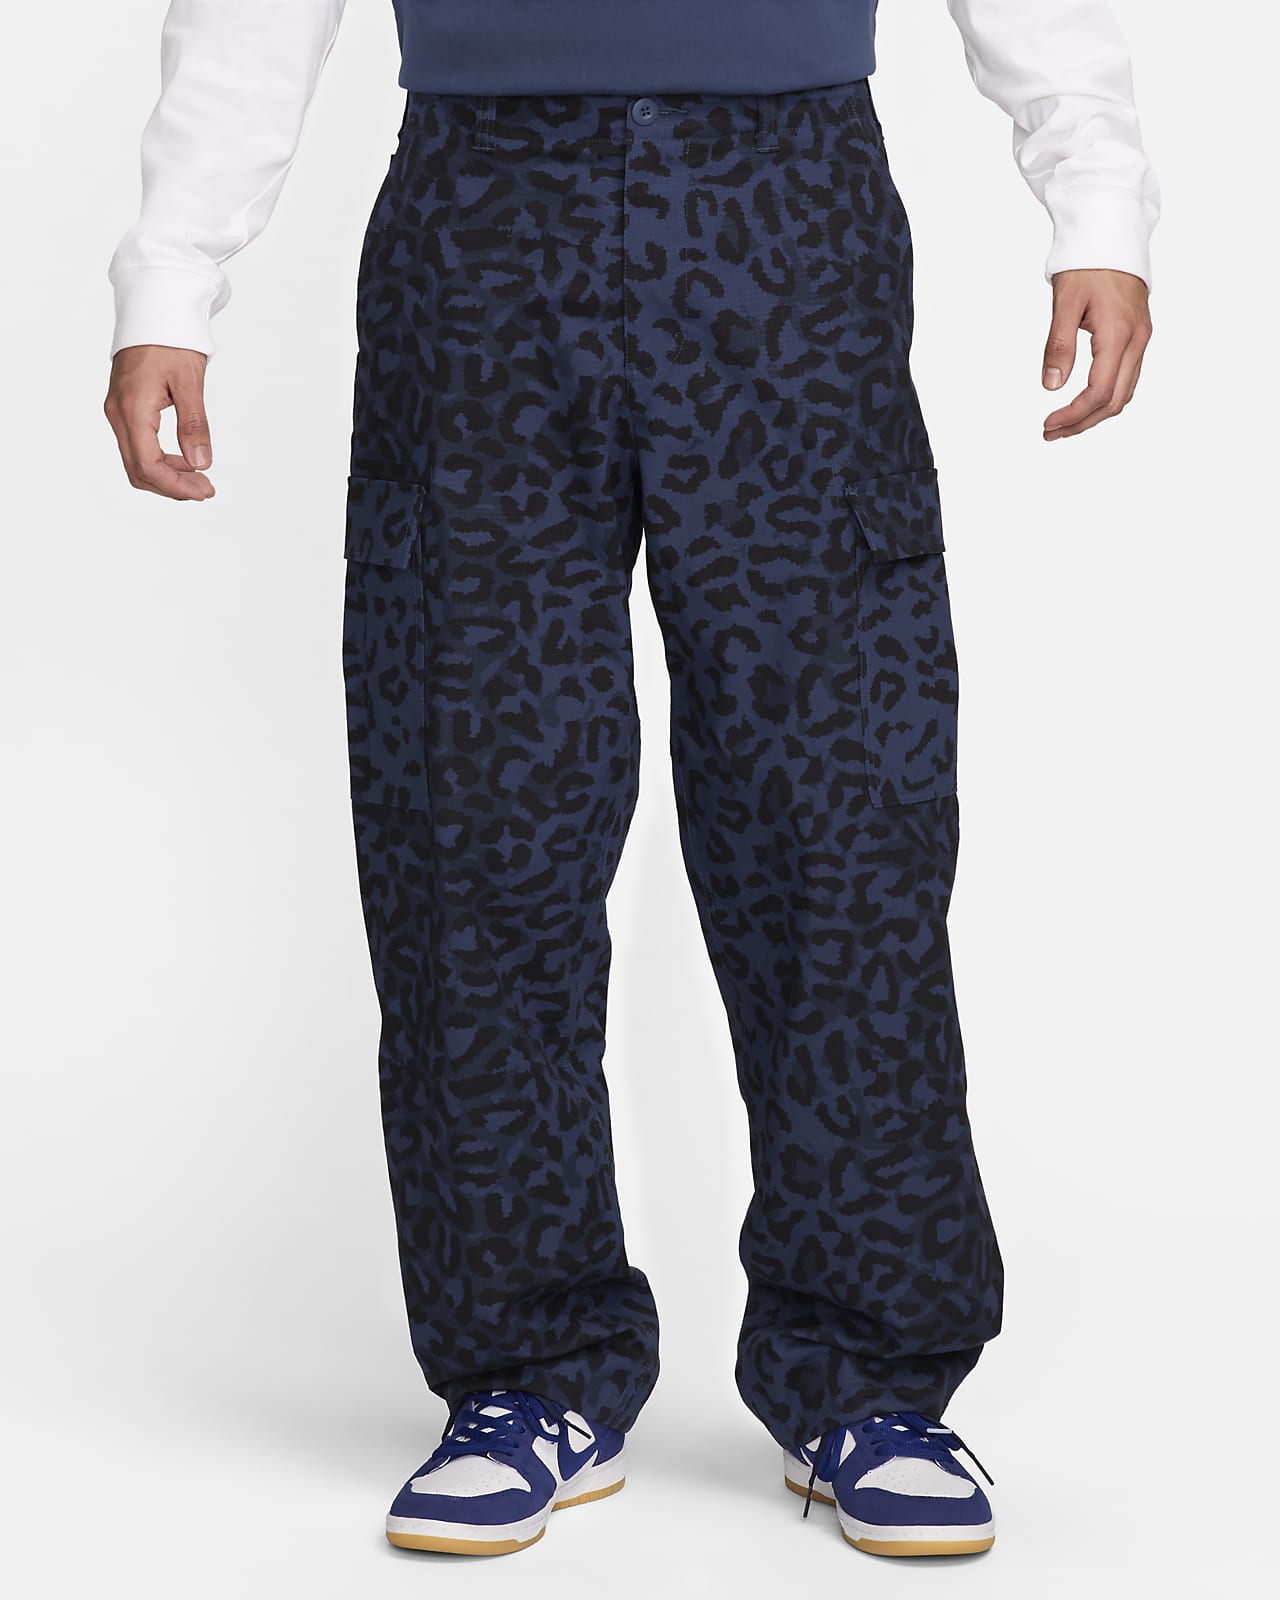 Pants cargo con estampado en toda la prenda para hombre Nike SB Kearny